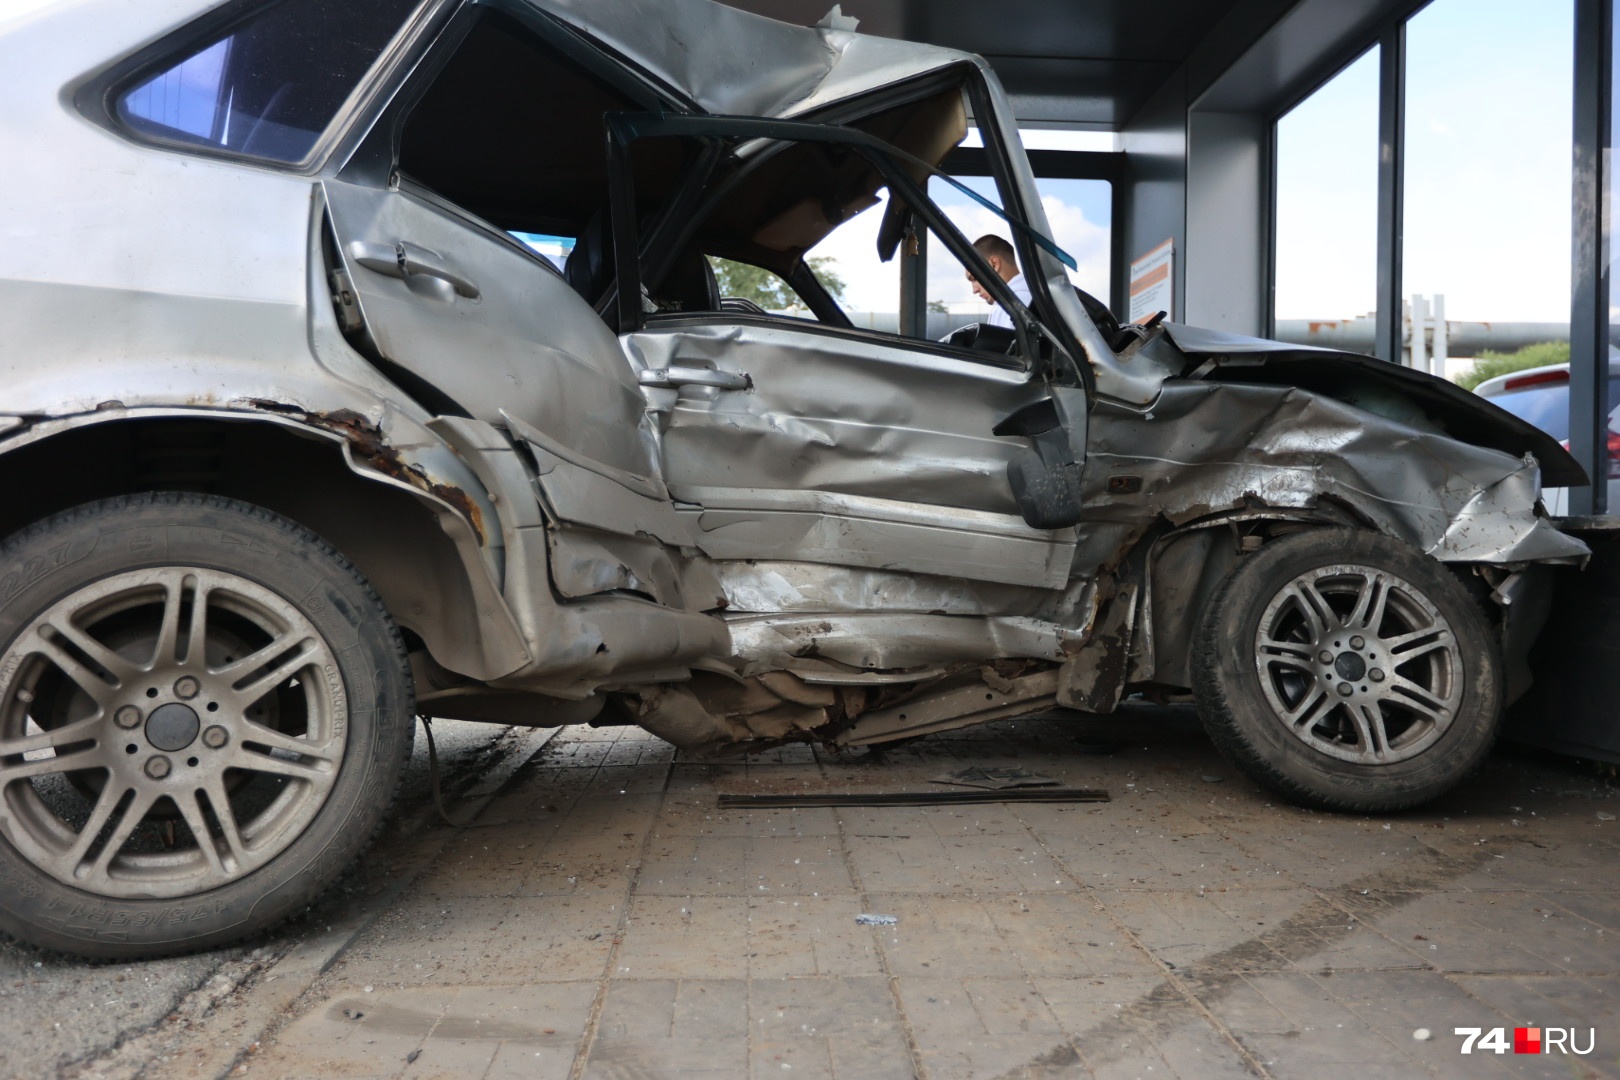 Машина серьезно повреждена, водитель — в больнице